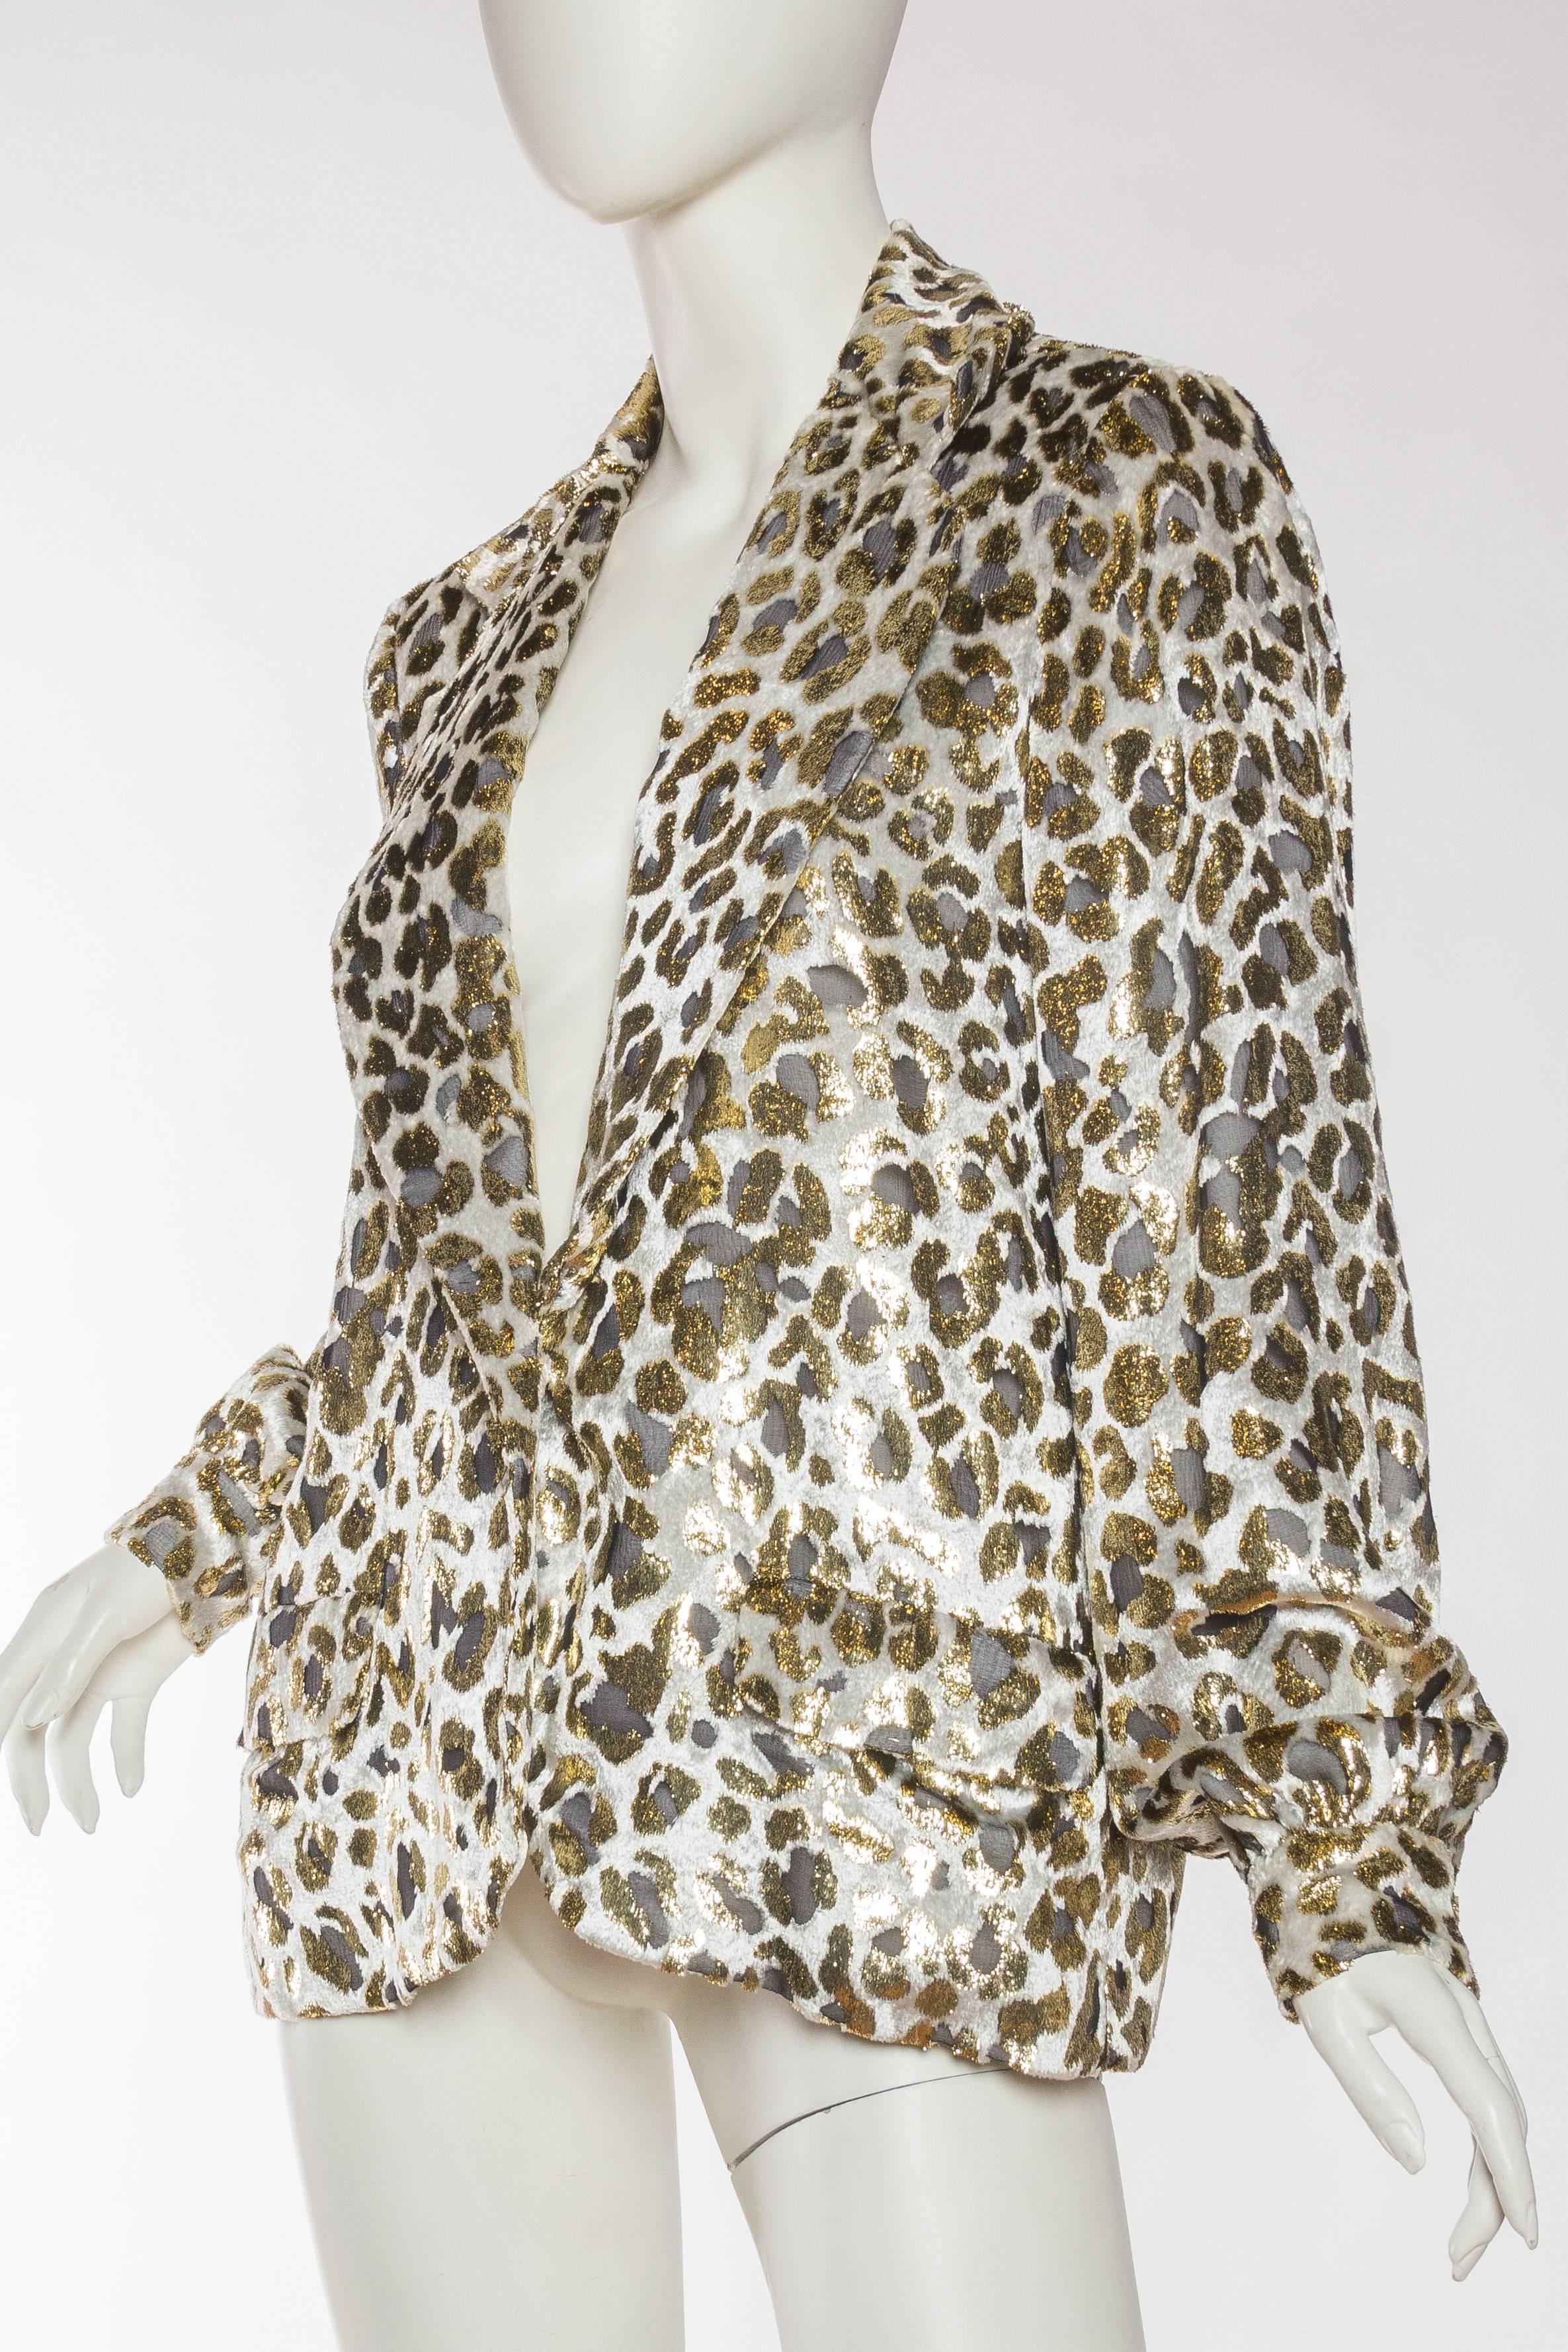 Gold Lurex Velvet Leopard Jacket Blouse by Bill Blass 1